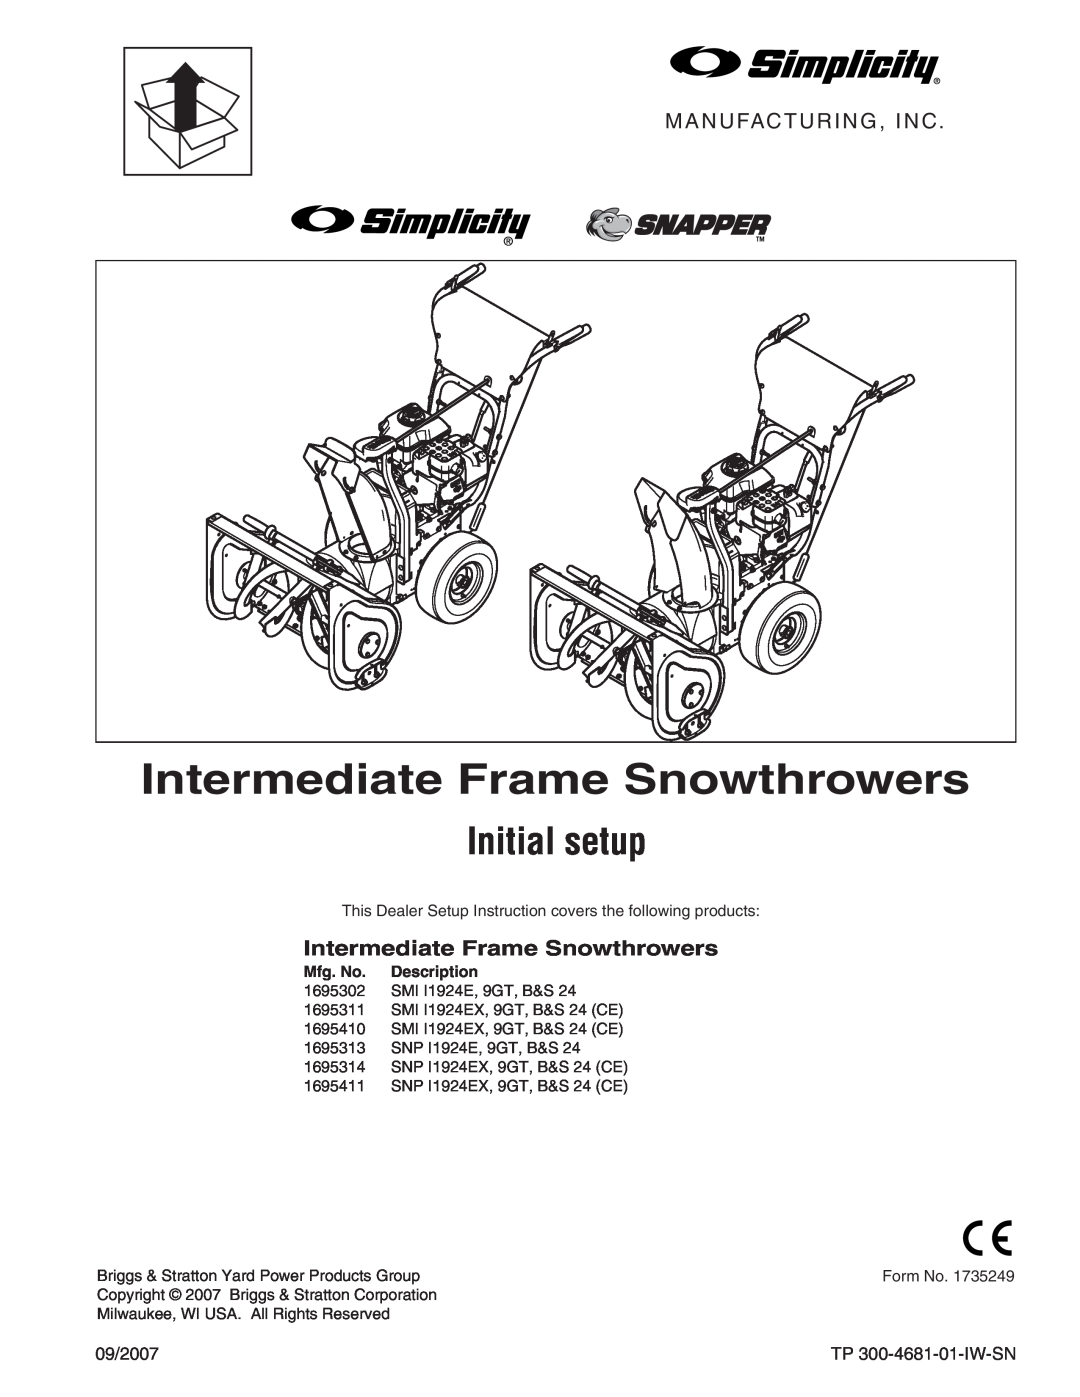 Simplicity SNP I1924E, 9GT manual Intermediate Frame Snowthrowers, Initial setup, Manufacturing, Inc, Mfg. No, Description 